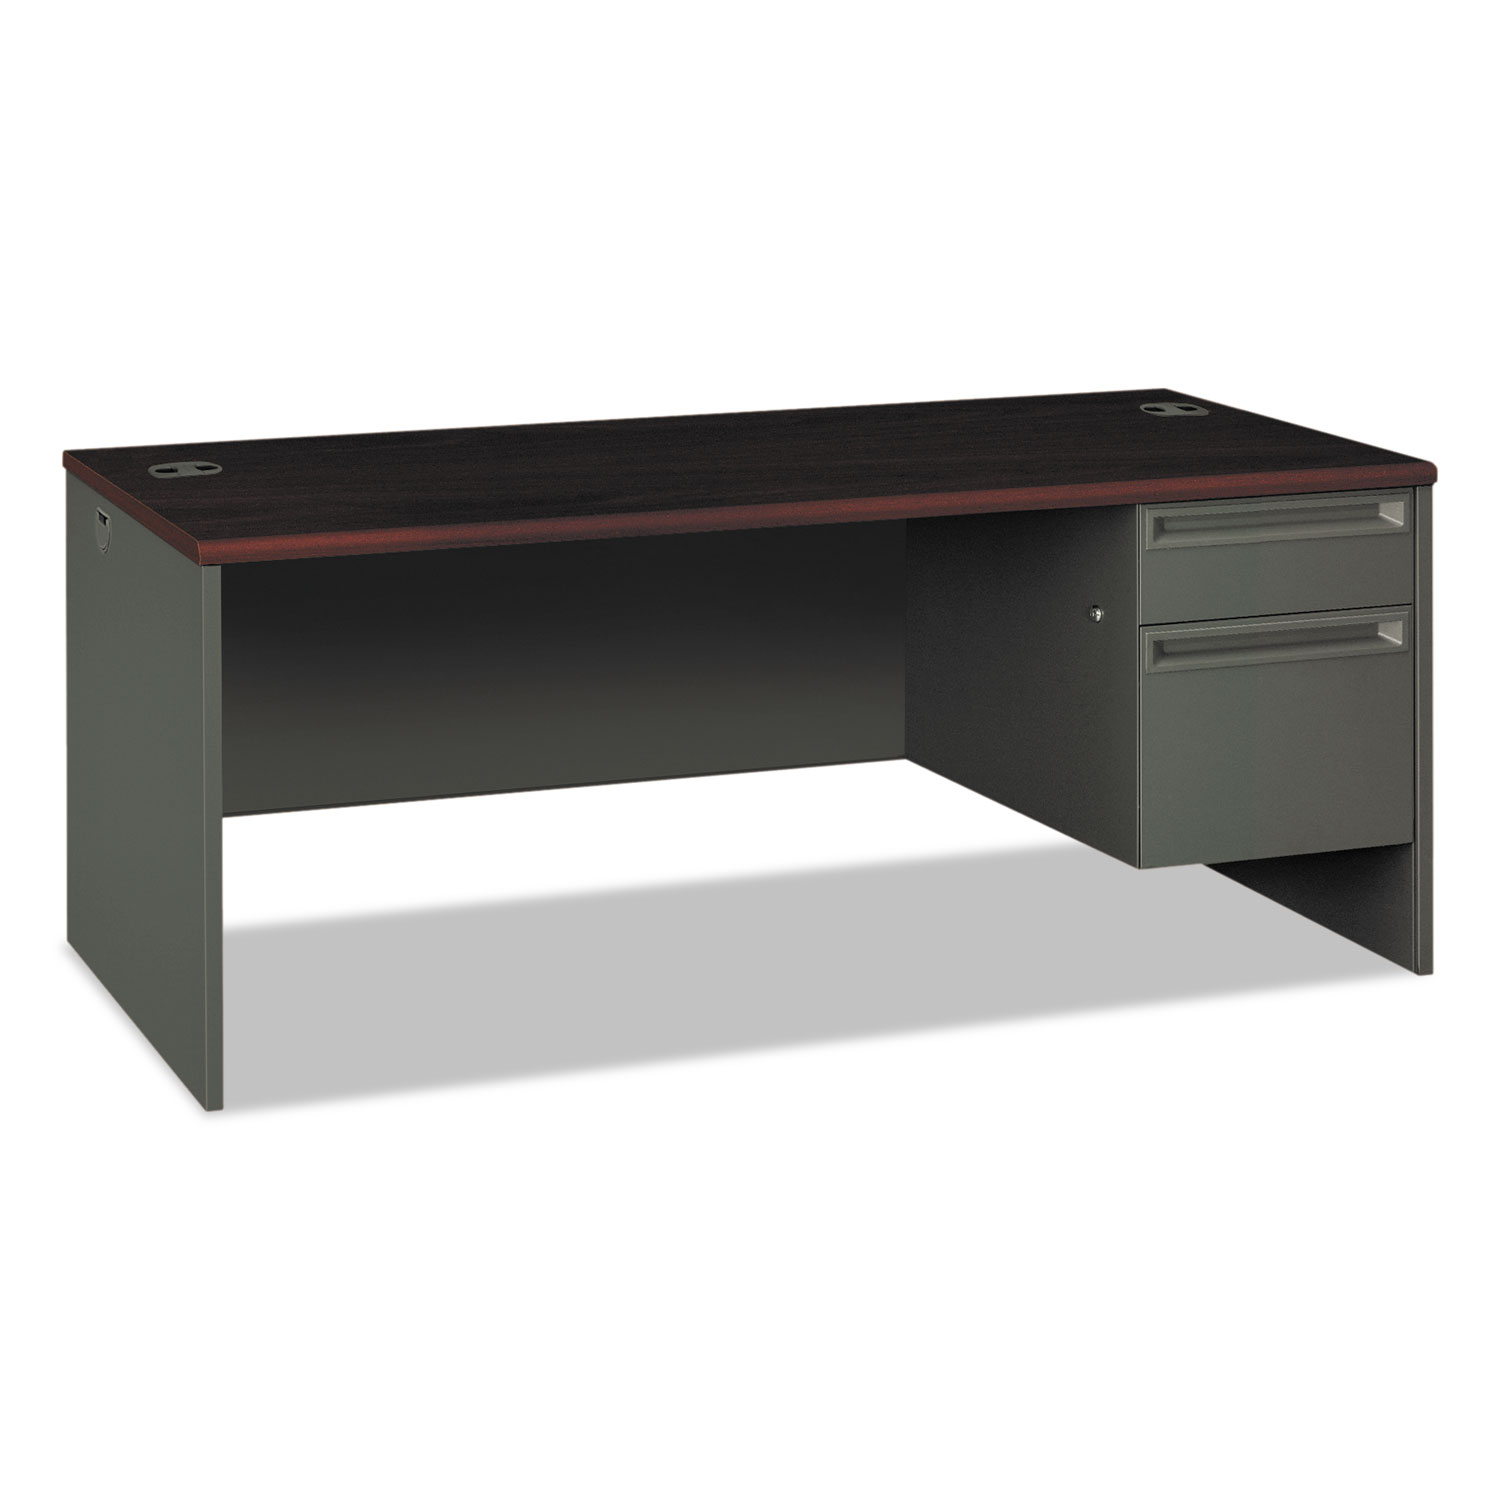  HON H38293R.N.S 38000 Series Right Pedestal Desk, 72w x 36d x 29.5h, Mahogany/Charcoal (HON38293RNS) 